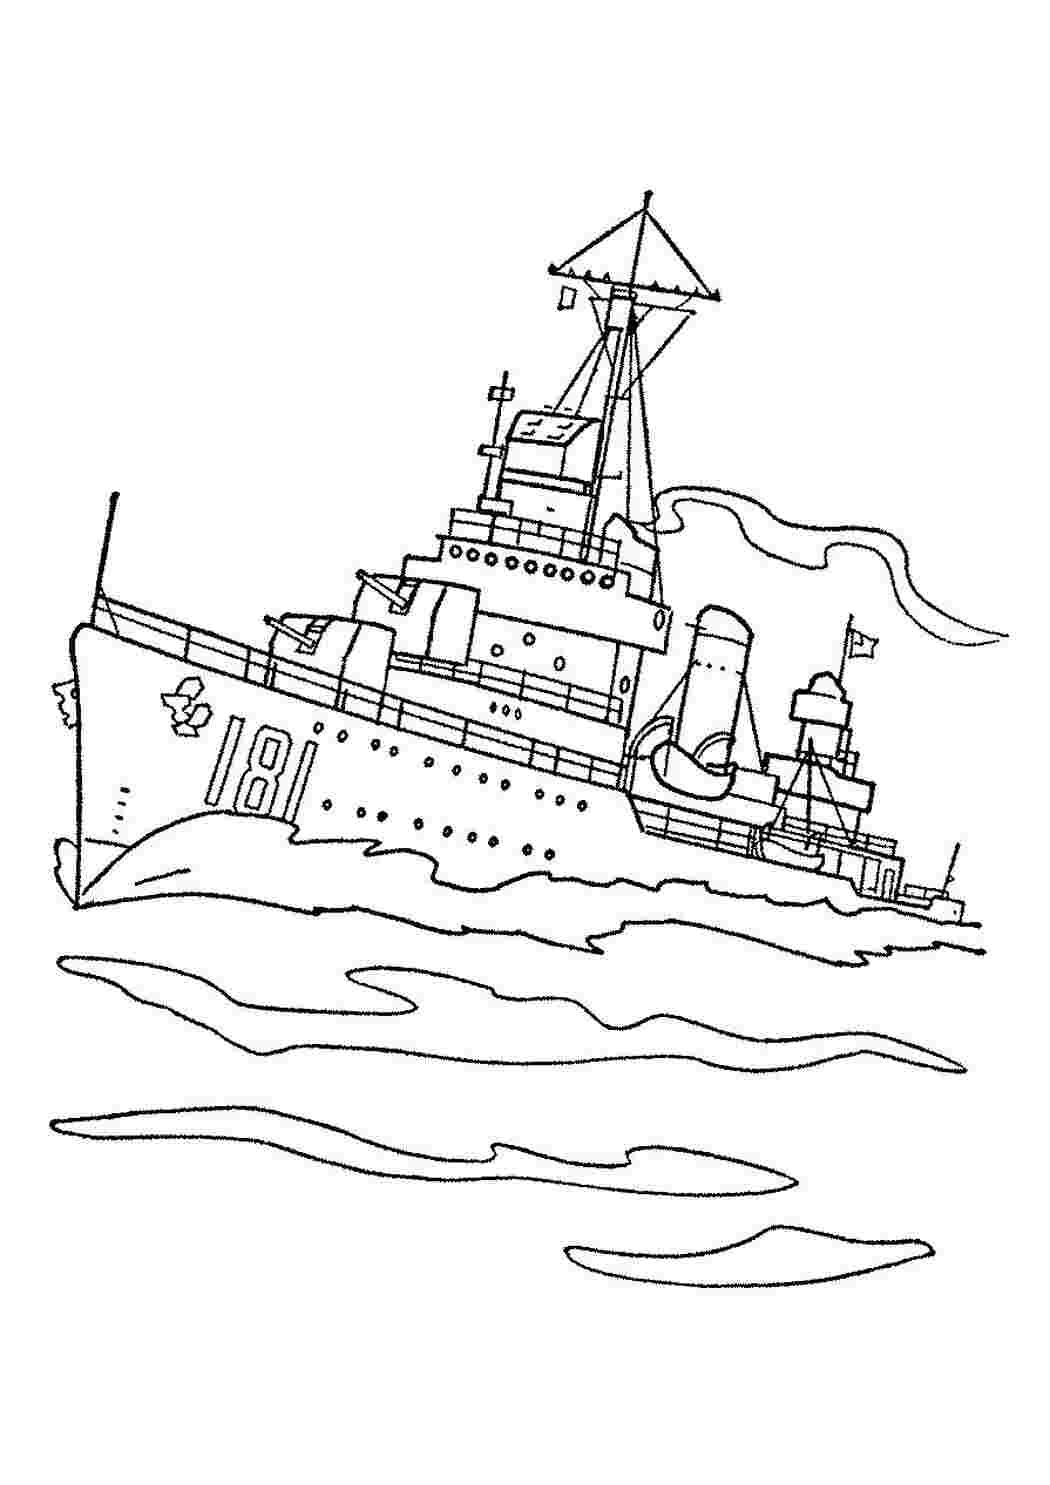 Раскраски Военные корабли - раскраска для детей на морскую тематику Военные корабли - раскраска для детей на морскую тематику  Раскраски скачать онлайн